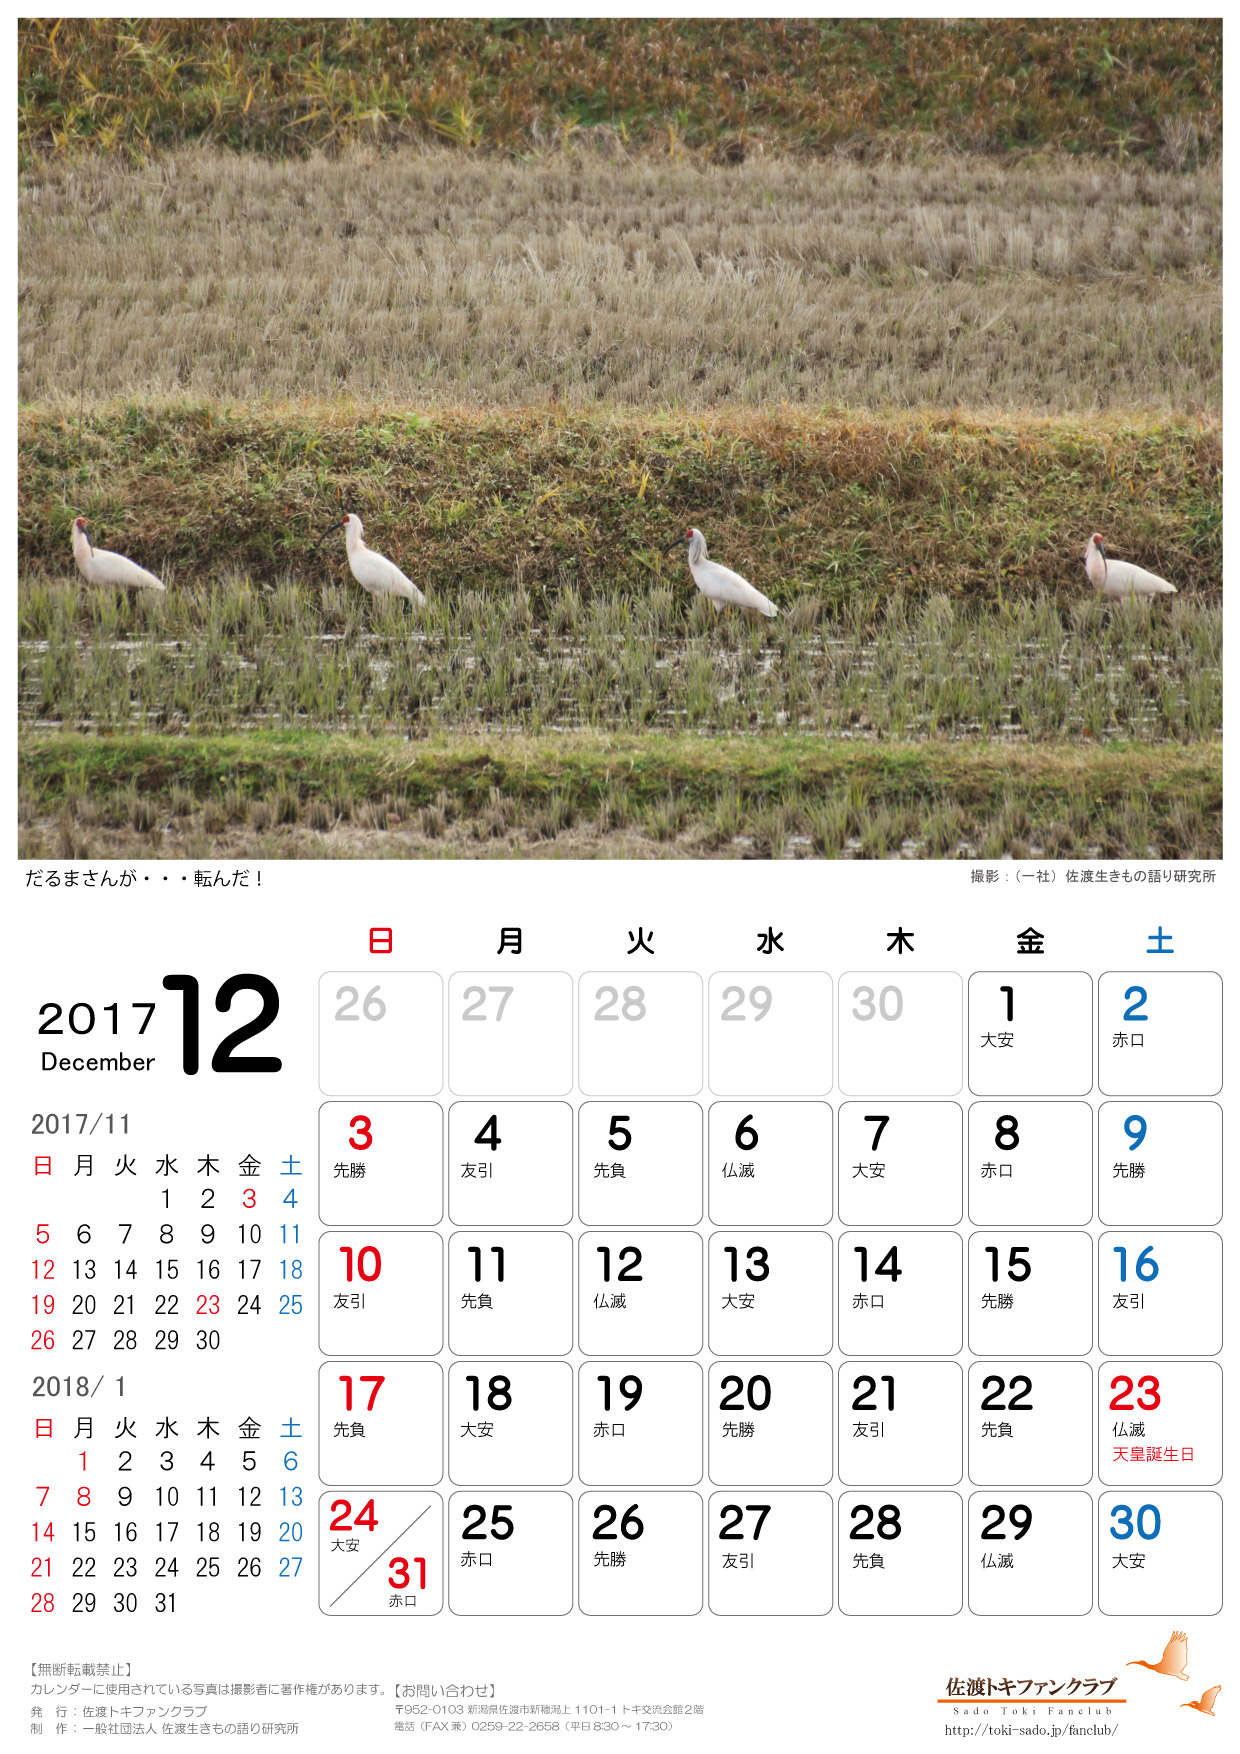 2017年トキカレンダー11月 12月無料配信のお知らせ 佐渡トキファンクラブ